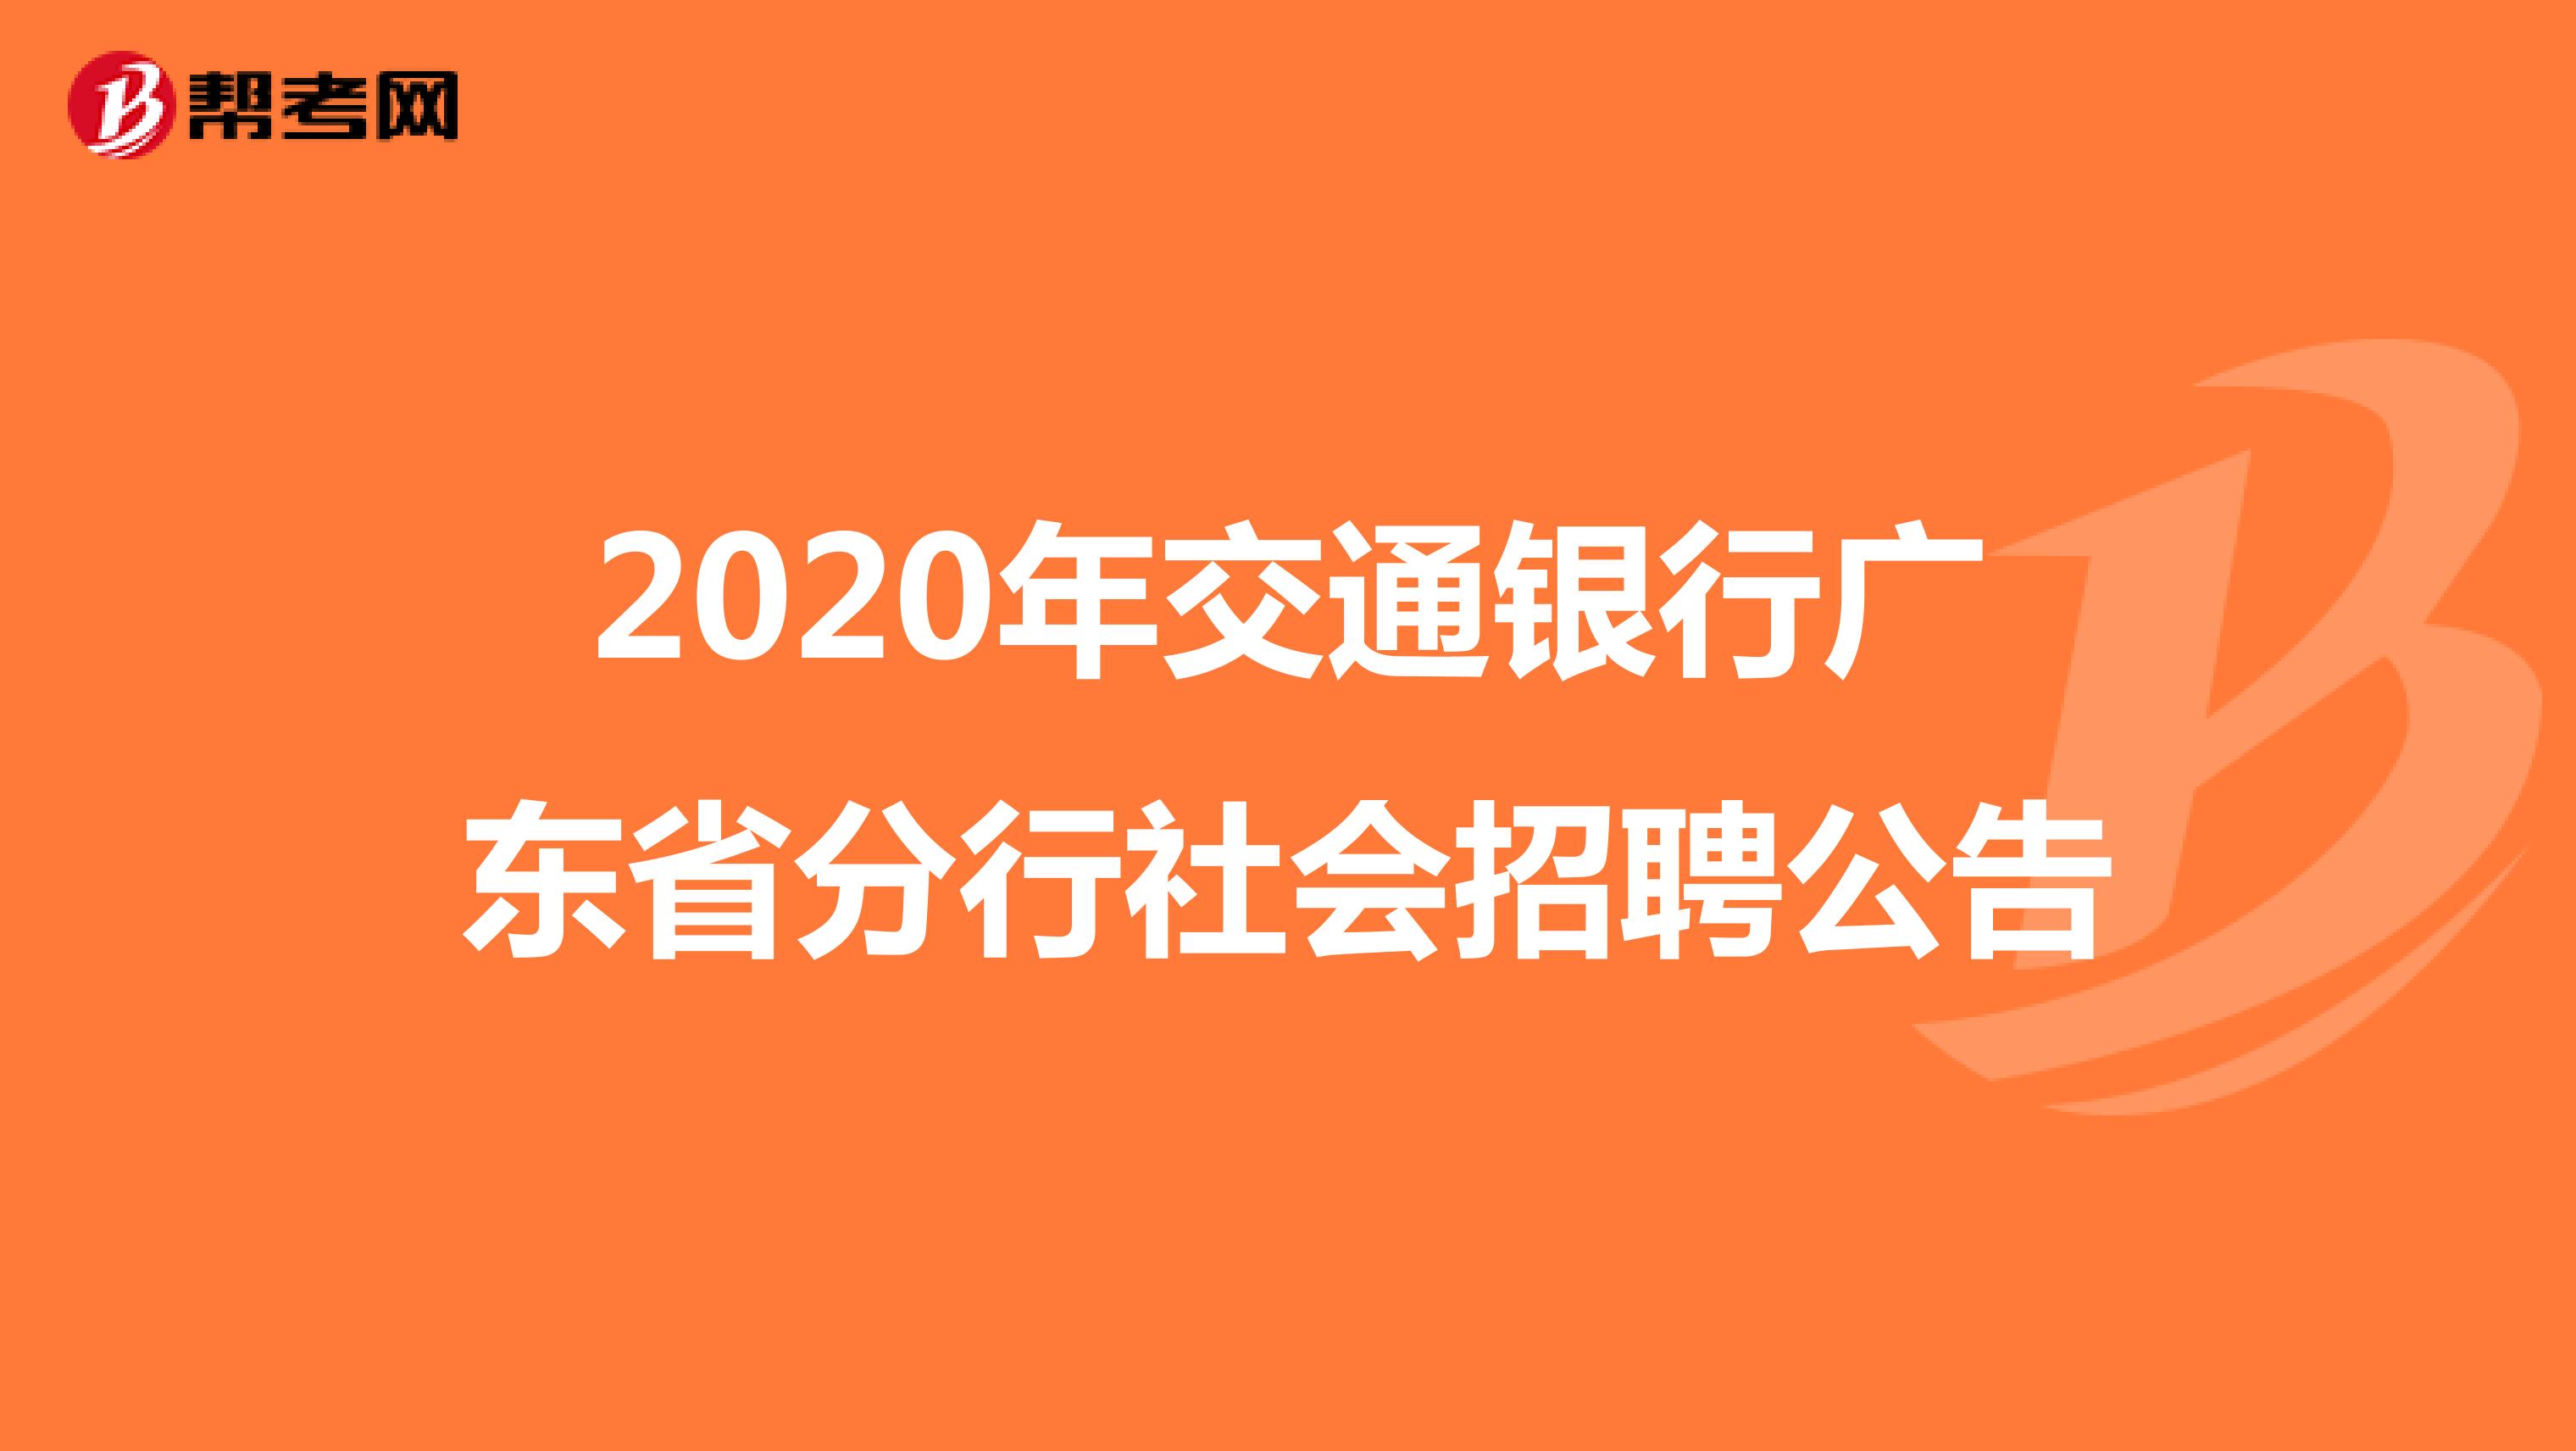 2020年交通银行广东省分行社会招聘公告